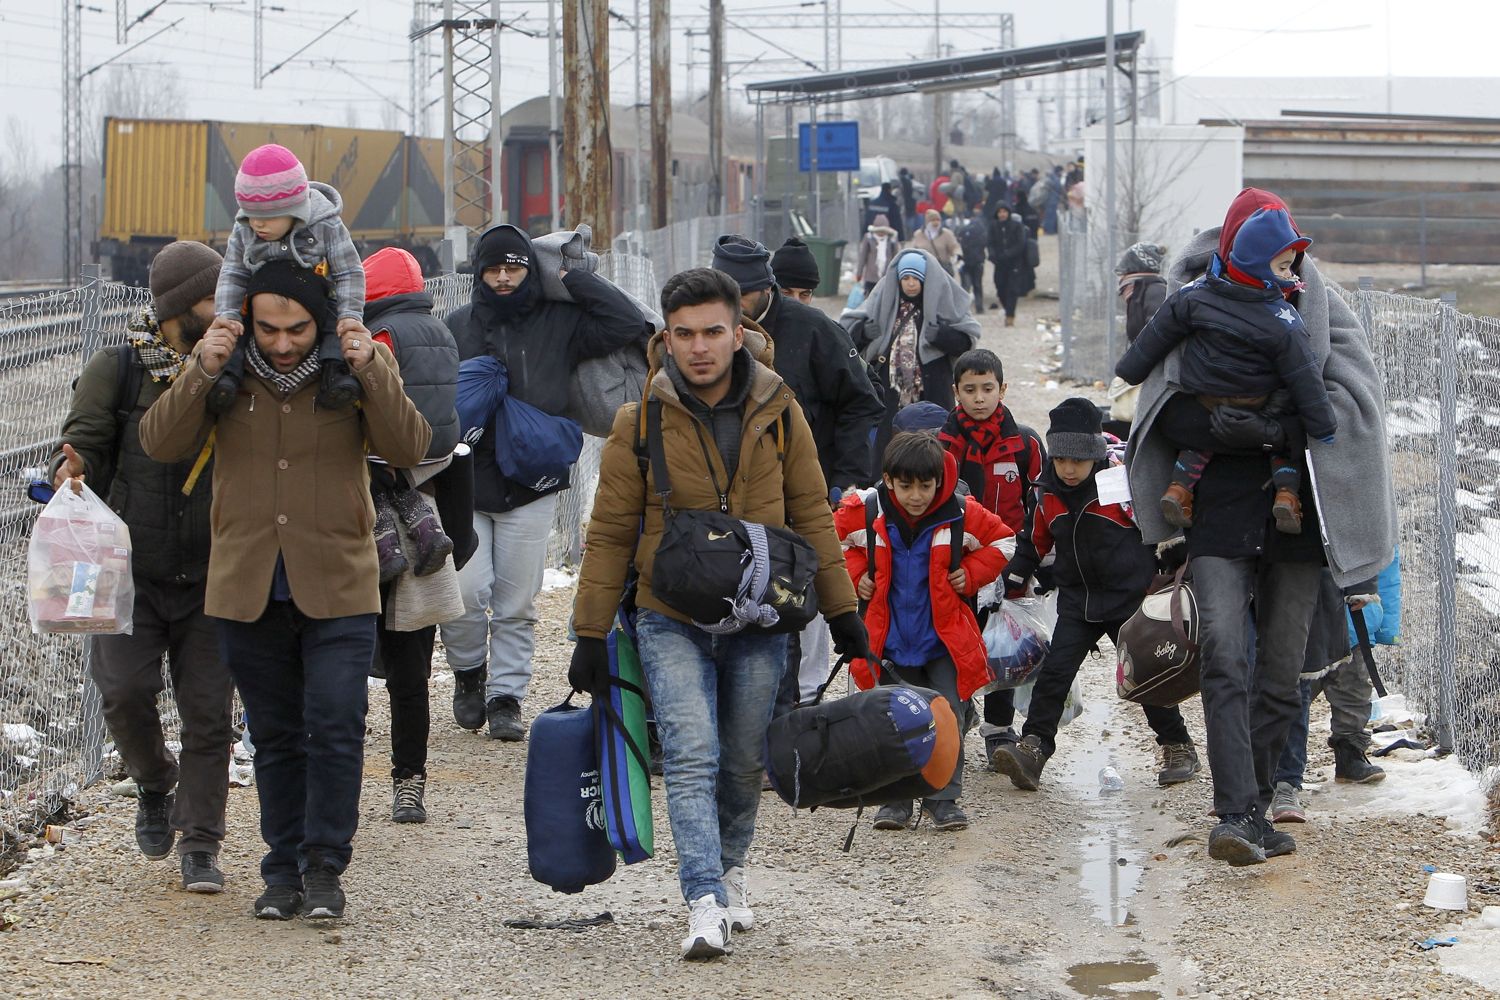 Okrugli stol 'EU i migracijski izazovi' - prilike i predrasude